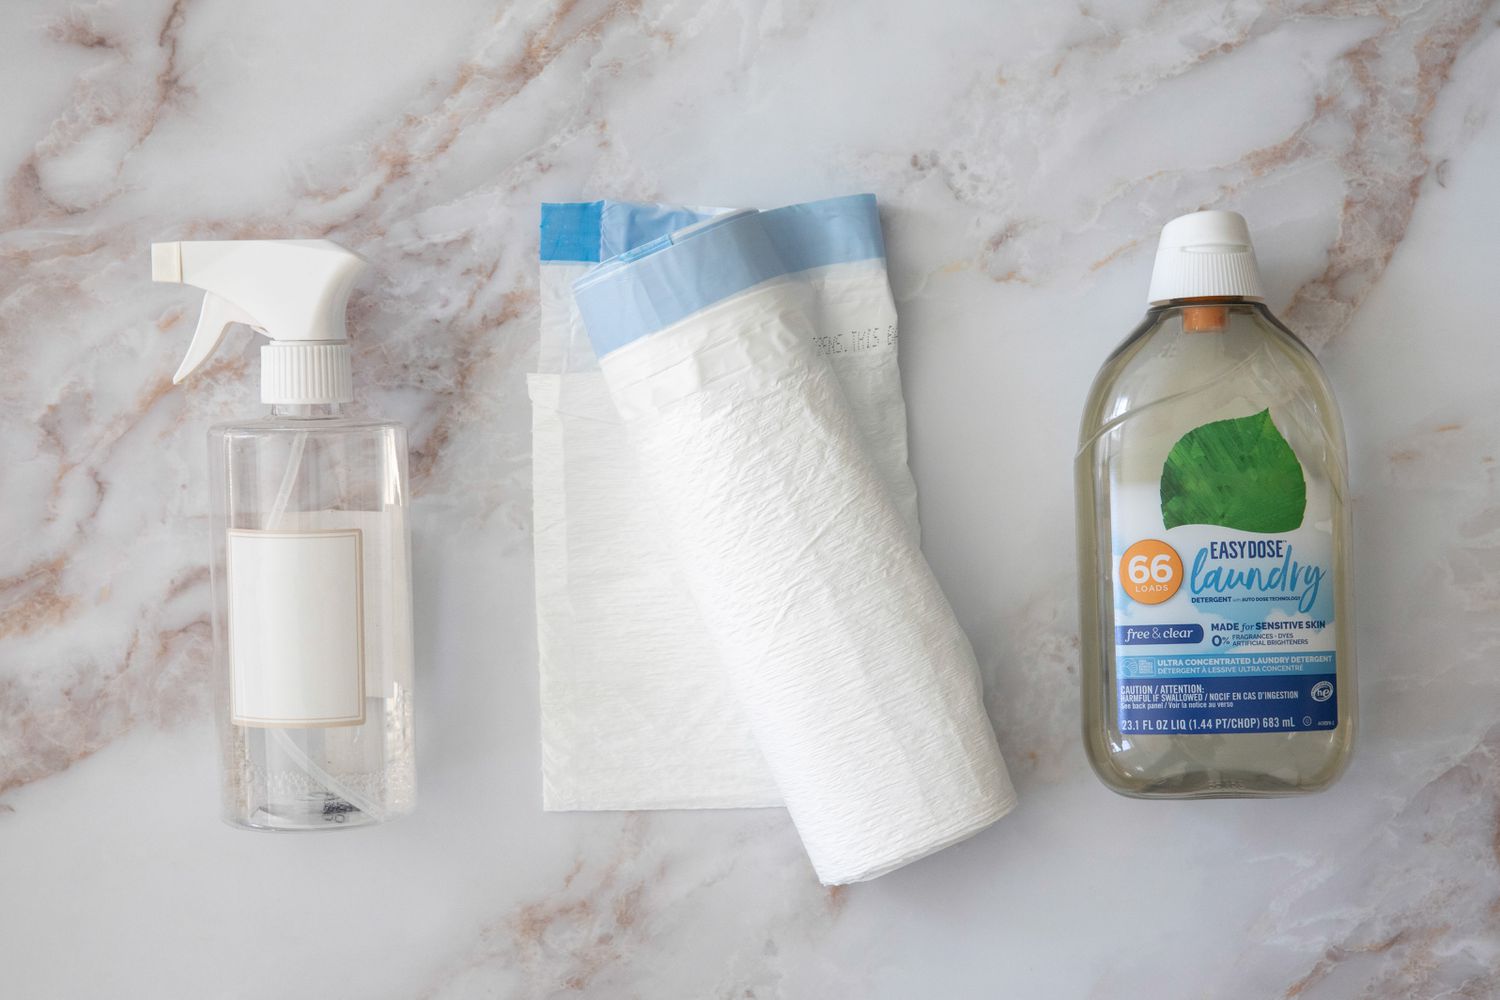 Botella de spray de cristal junto a un rollo de bolsa de basura de plástico y una botella de detergente para la ropa